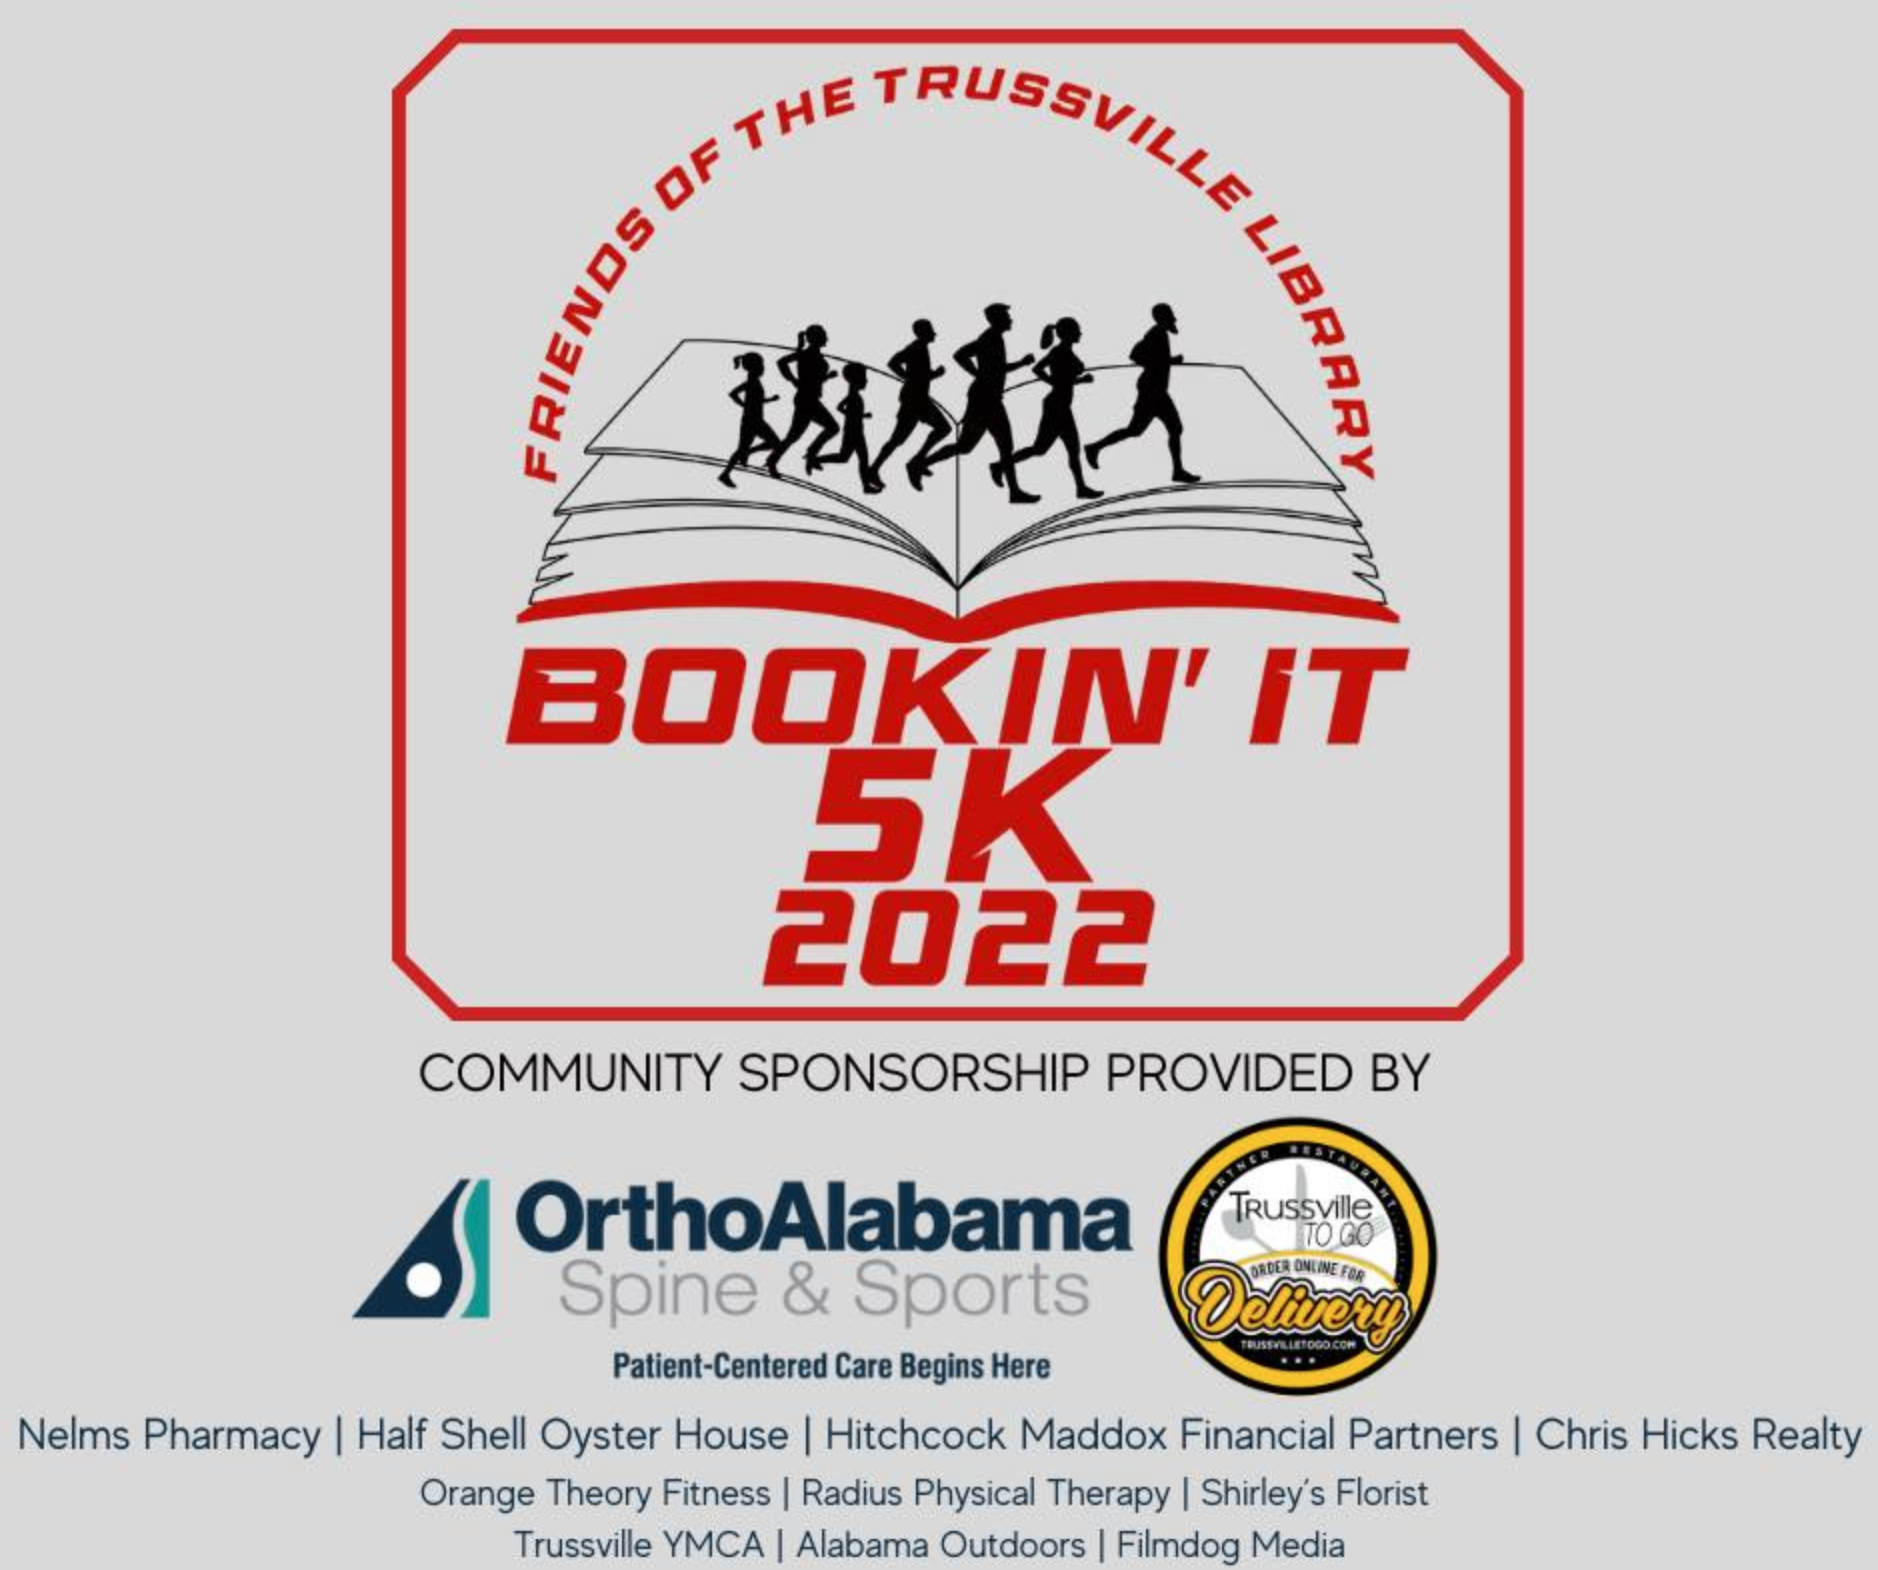 Trussville Public Library announces Bookin' It 5K Race/Walk